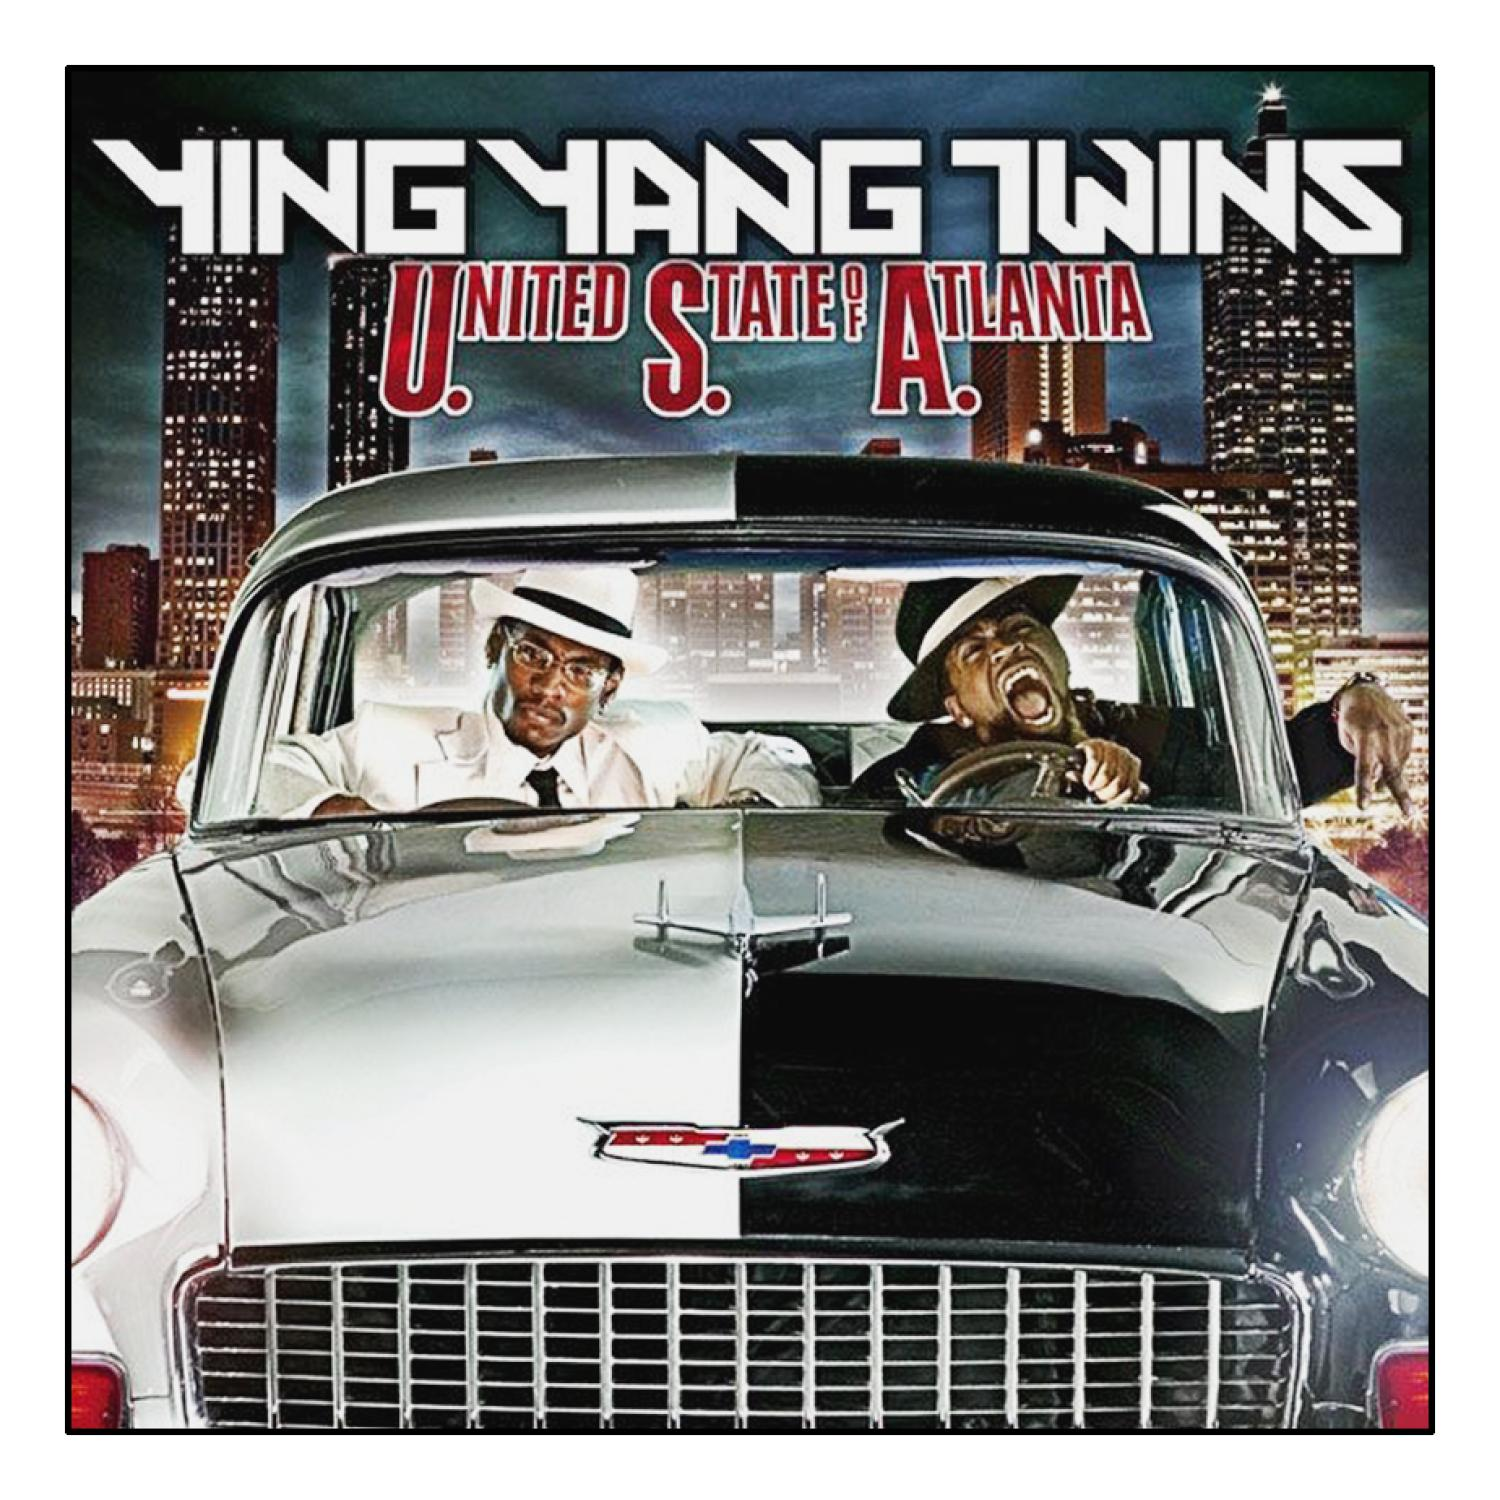 Ying Yang United States - of (CD) - Atlanta Twins